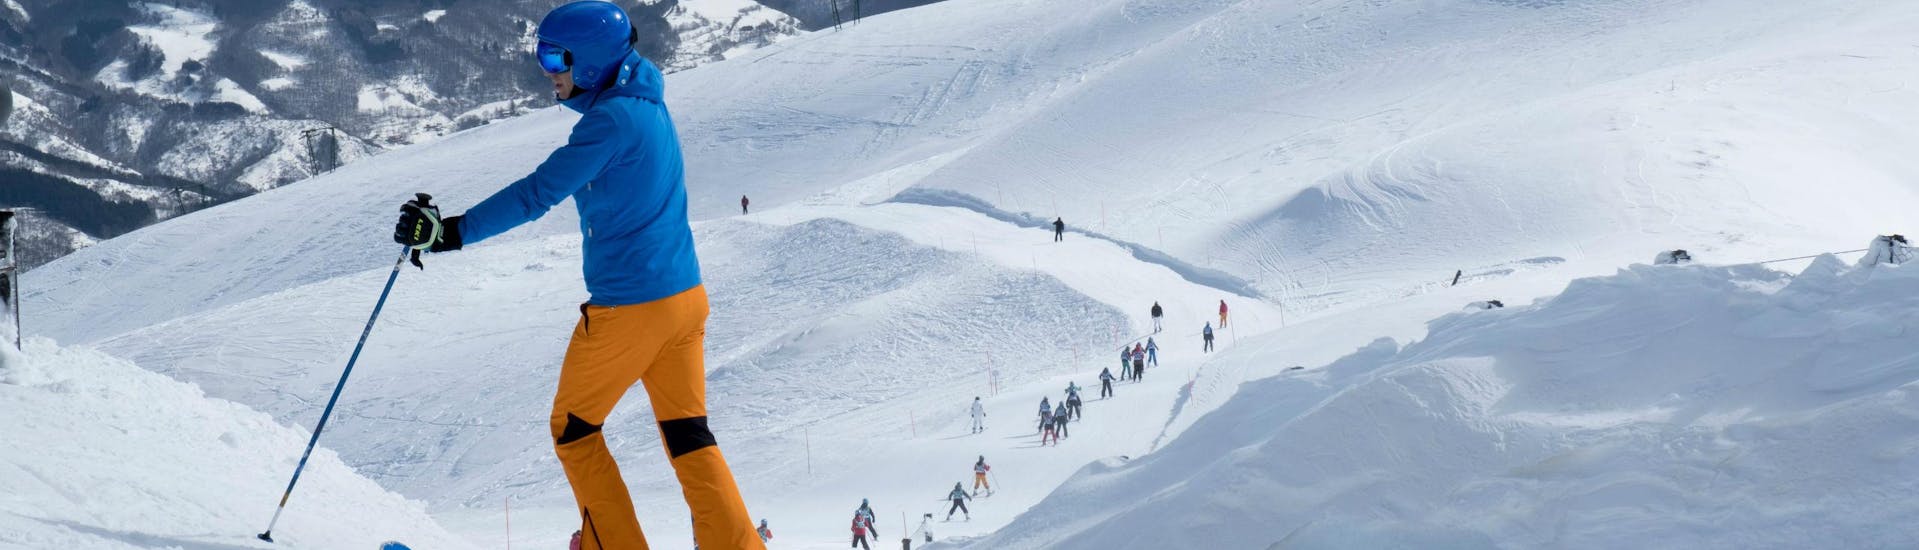 Ein Skifahrer blickt über die Pisten des Skigebiets Abetone, wo die örtlichen Skischulen eine Vielzahl an Skikursen für jedes Alter und für jeden Erfahrungsstand anbieten.